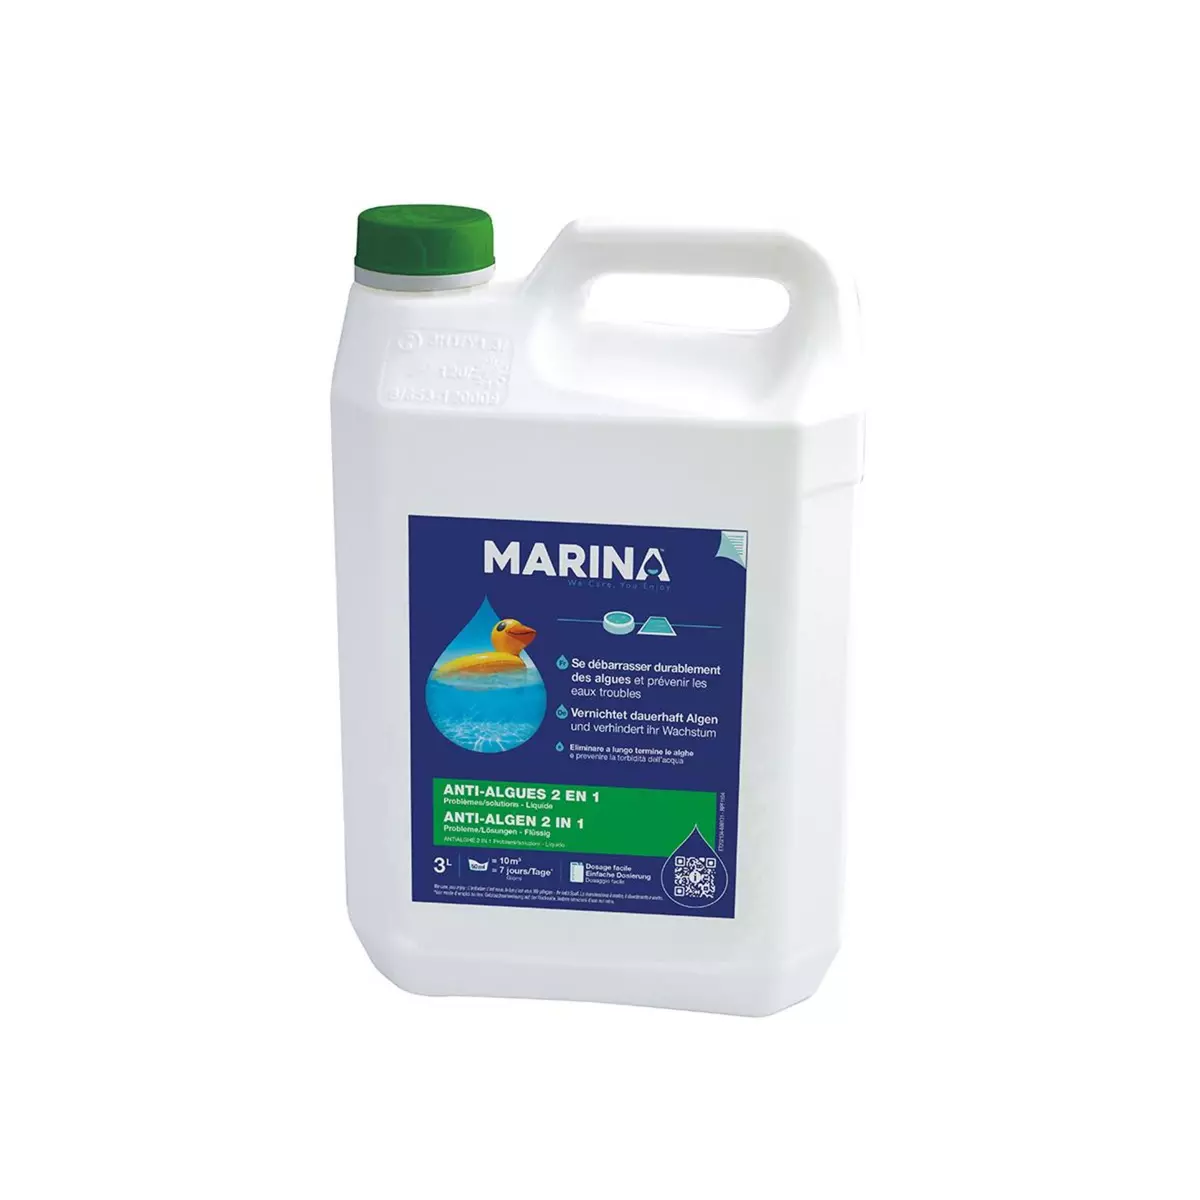 MARINA Anti-algues 2 en 1 liquide 3 L - Marina